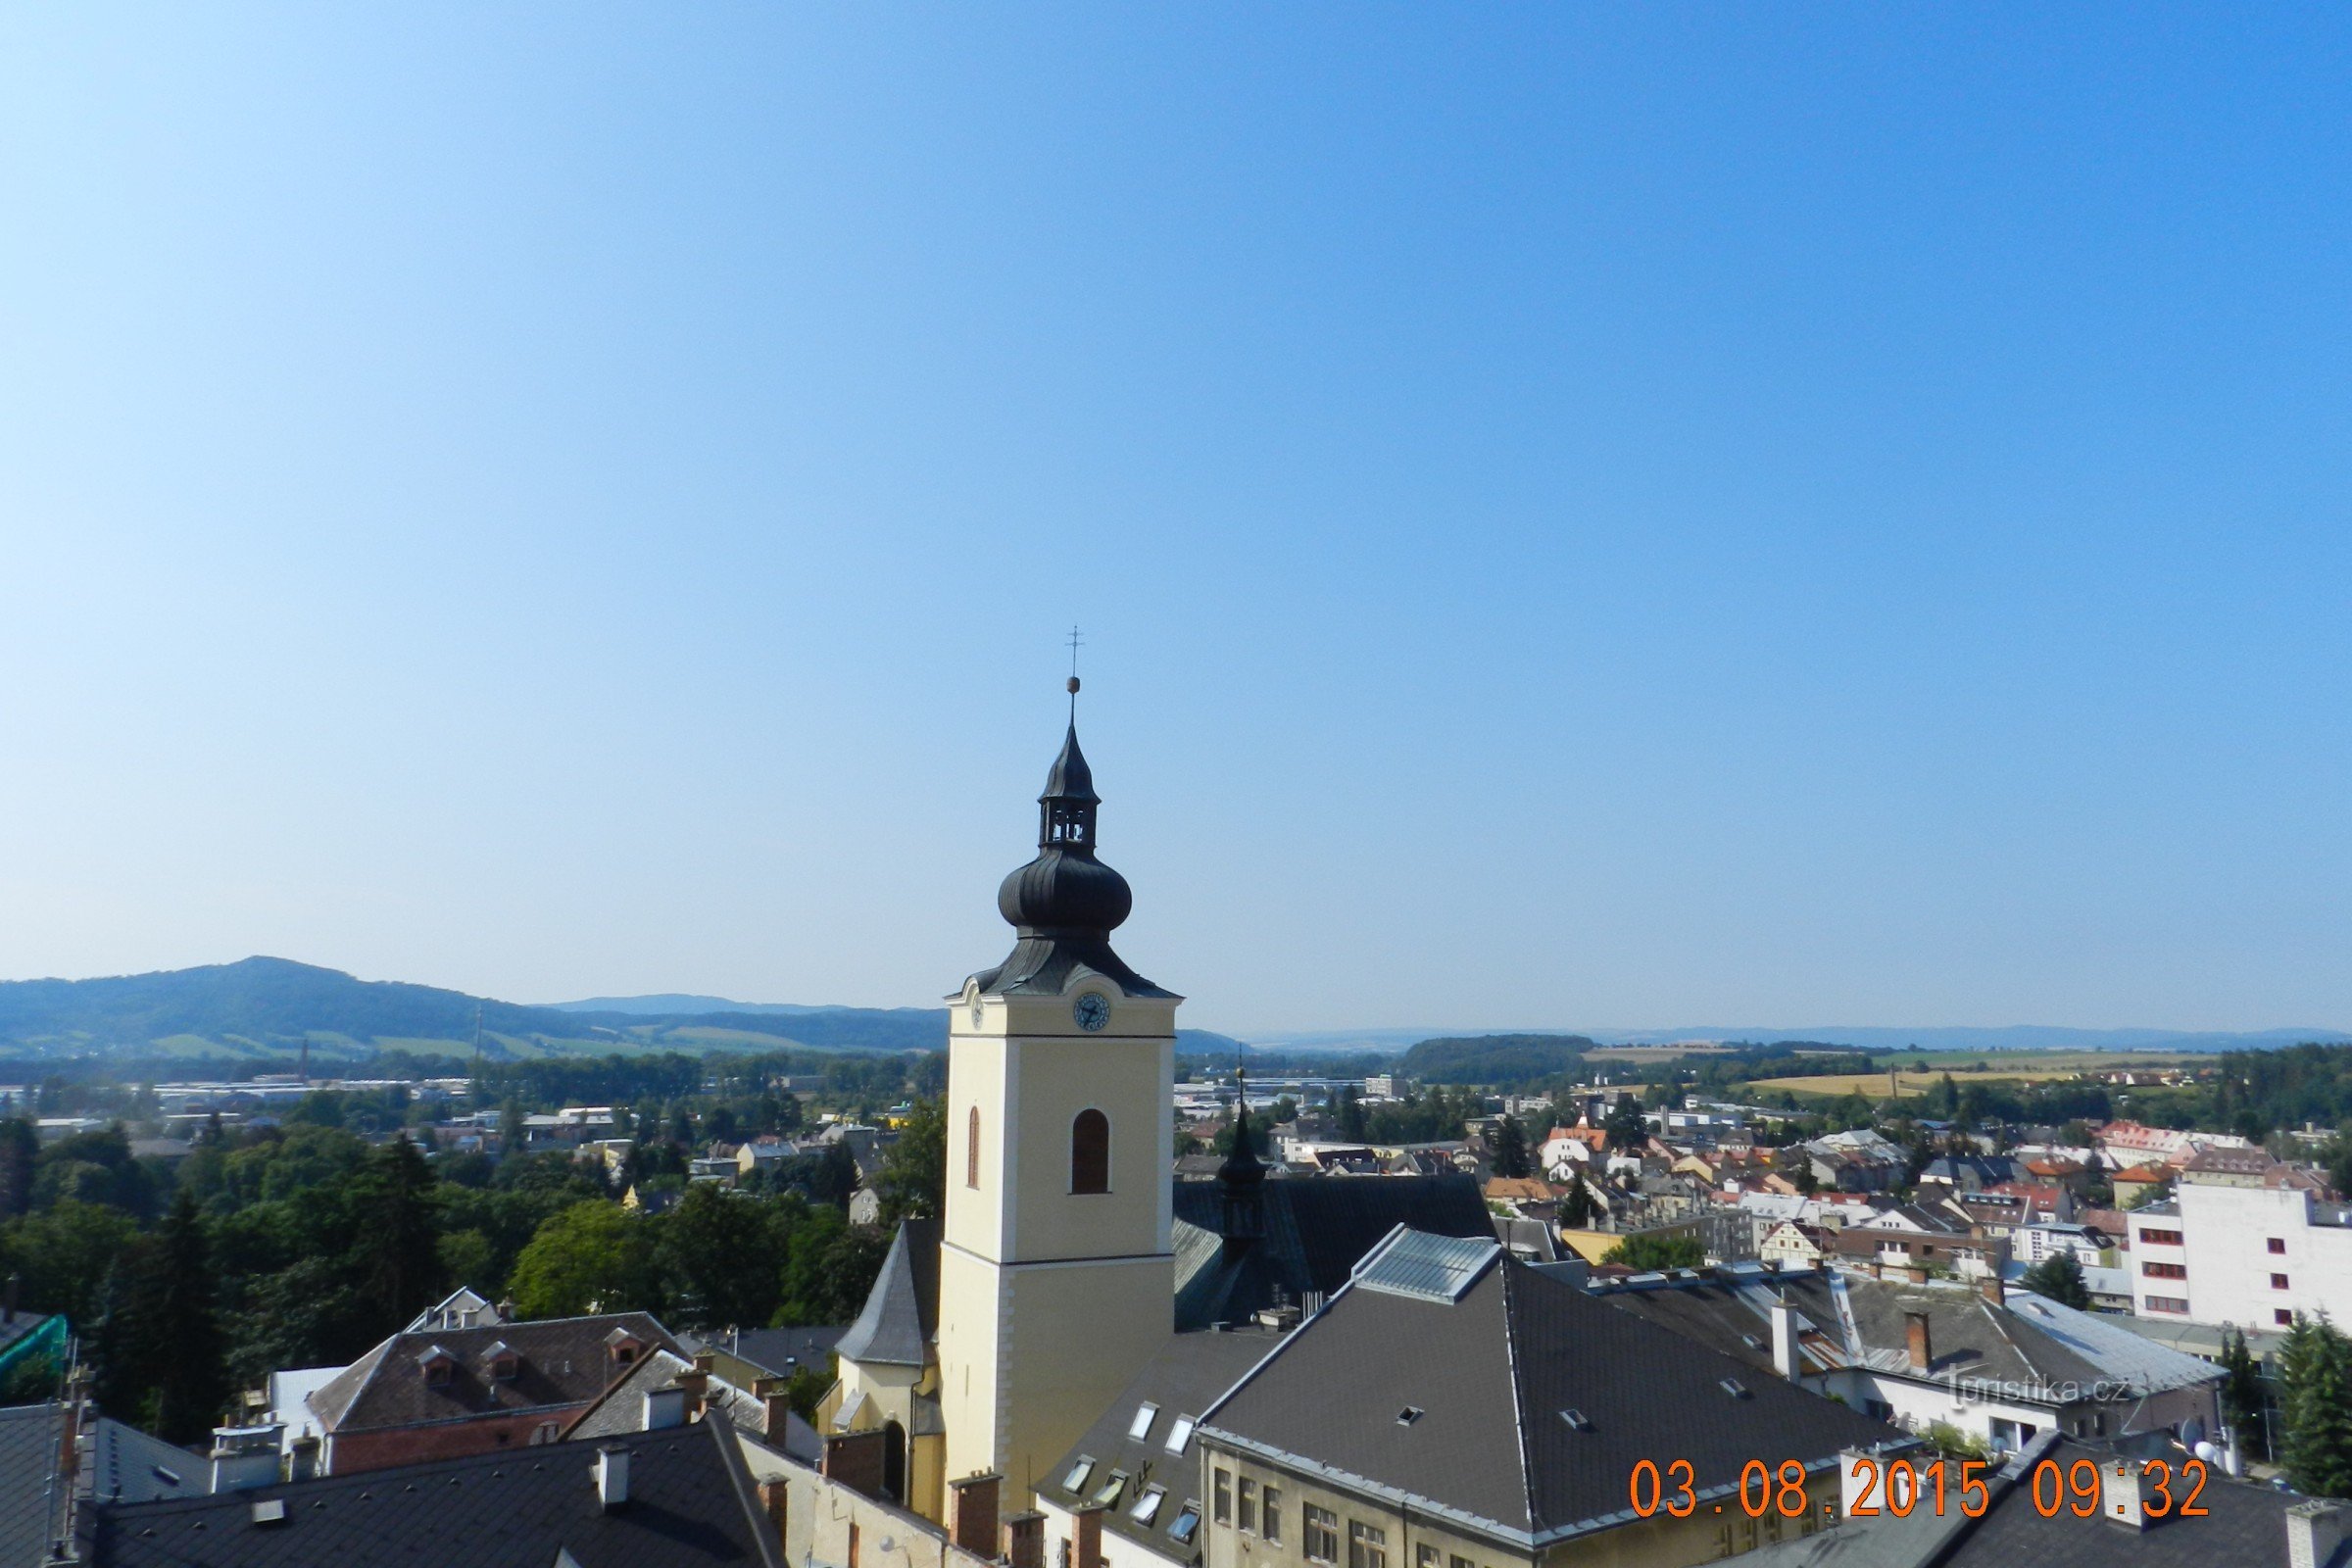 シュンペルクの市庁舎の塔からの眺めとブルードヴェチュカでの停車 (8/2015)